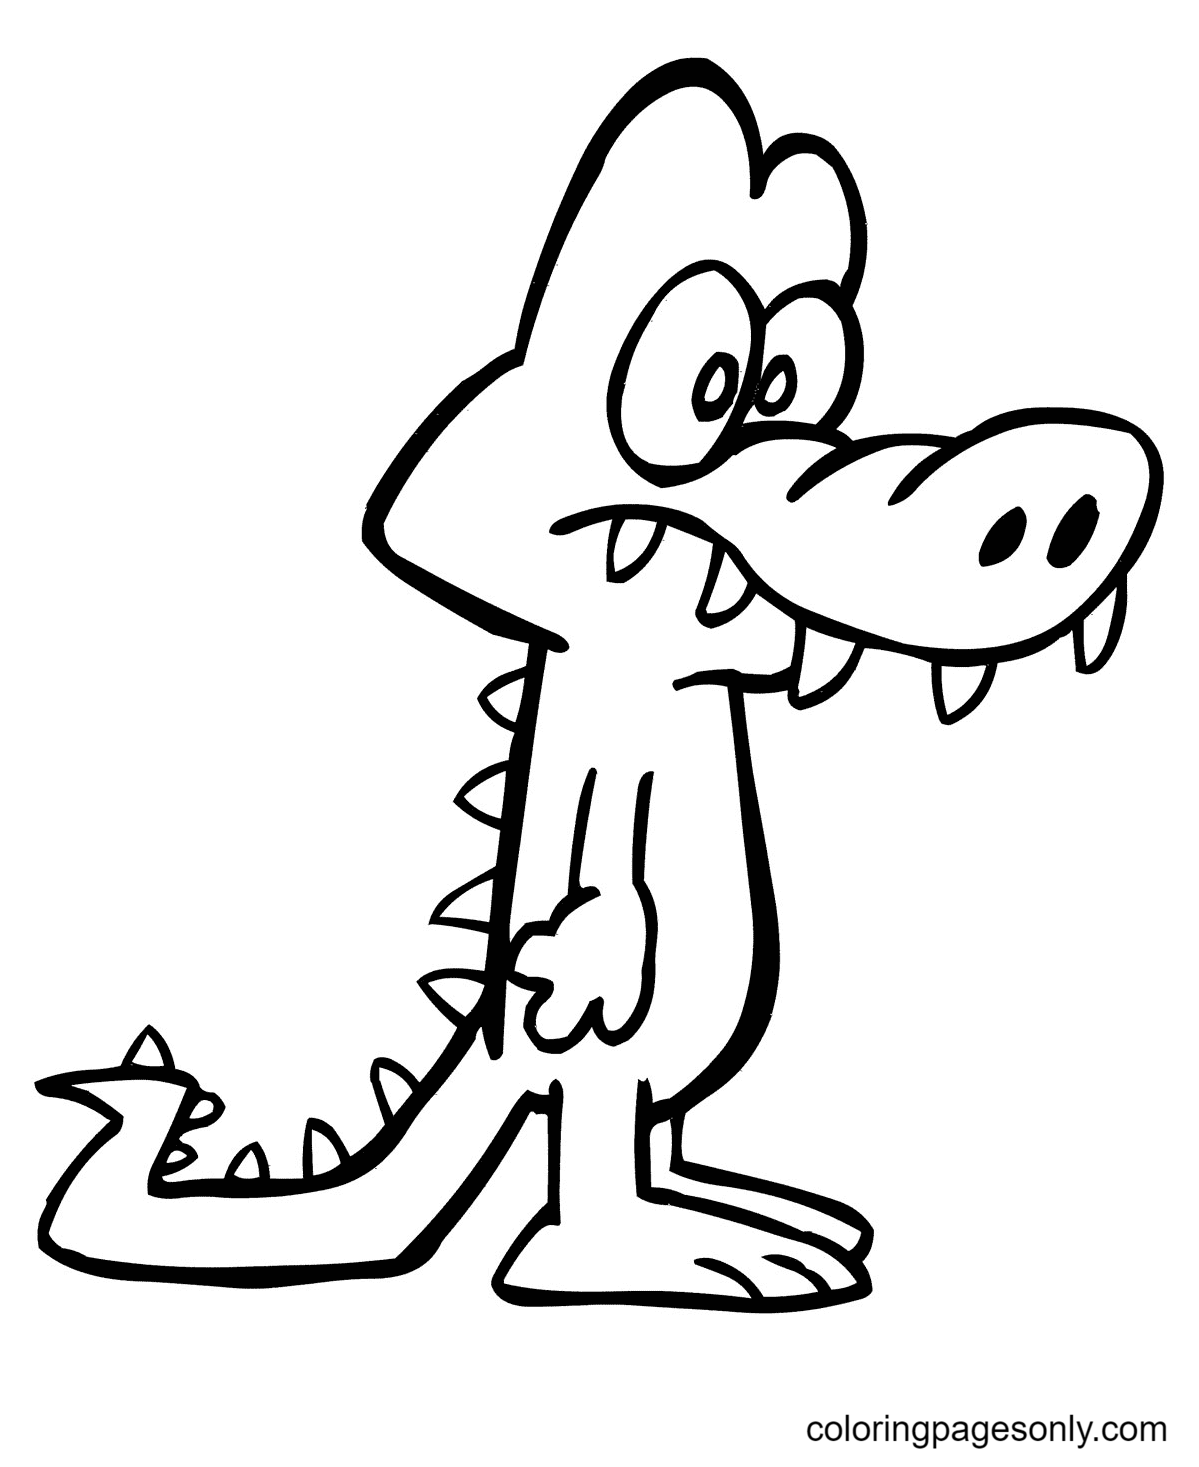 Cocodrilo de divertidos dibujos animados de Alligator